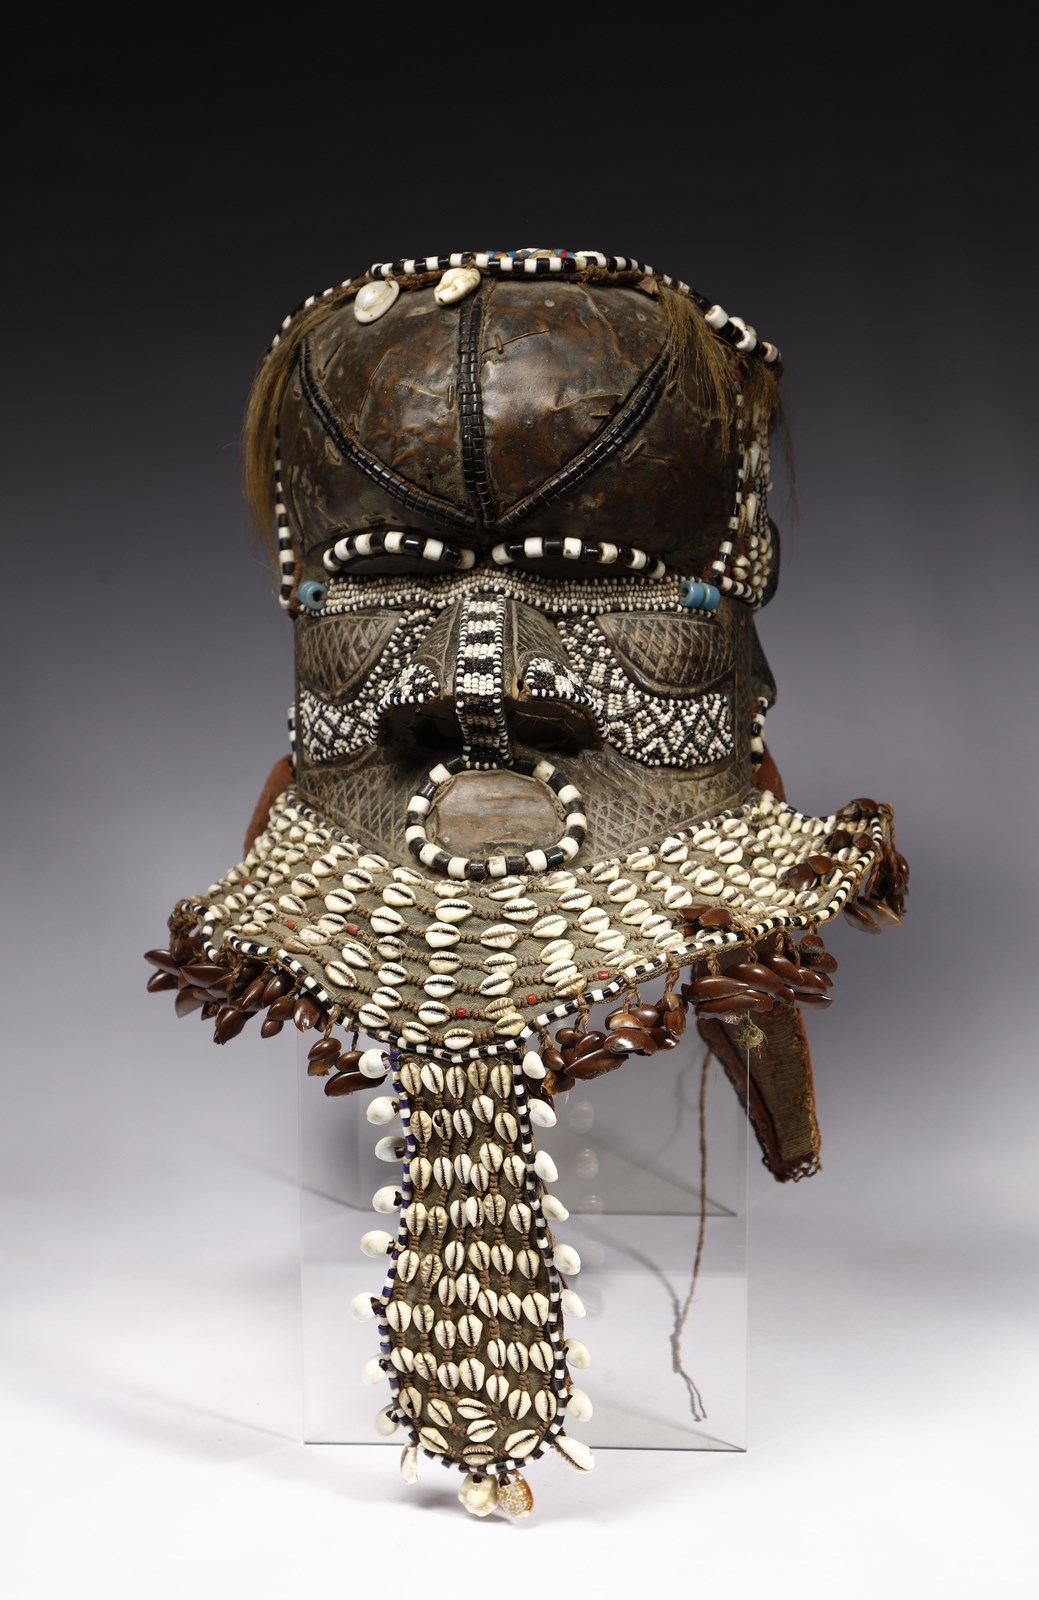 Maschera elmo Bwoom
Kuba, R.D.Congo (Arte Africana )